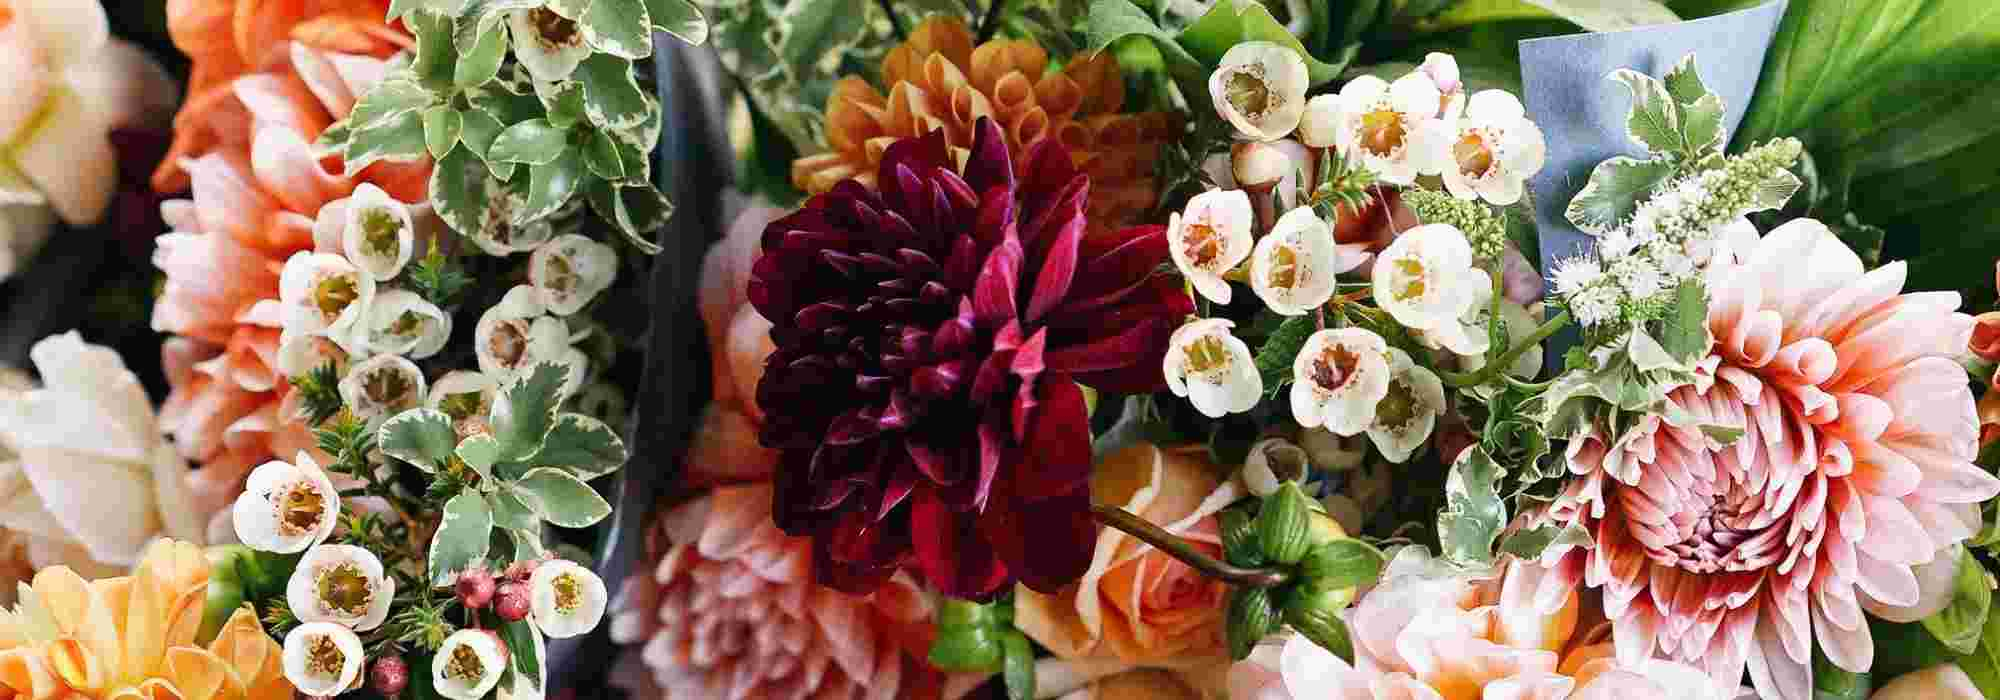 Créer Un Jardin De Fleurs À Couper Pour Faire Des Bouquets ... intérieur Fleurs À Couper Au Jardin